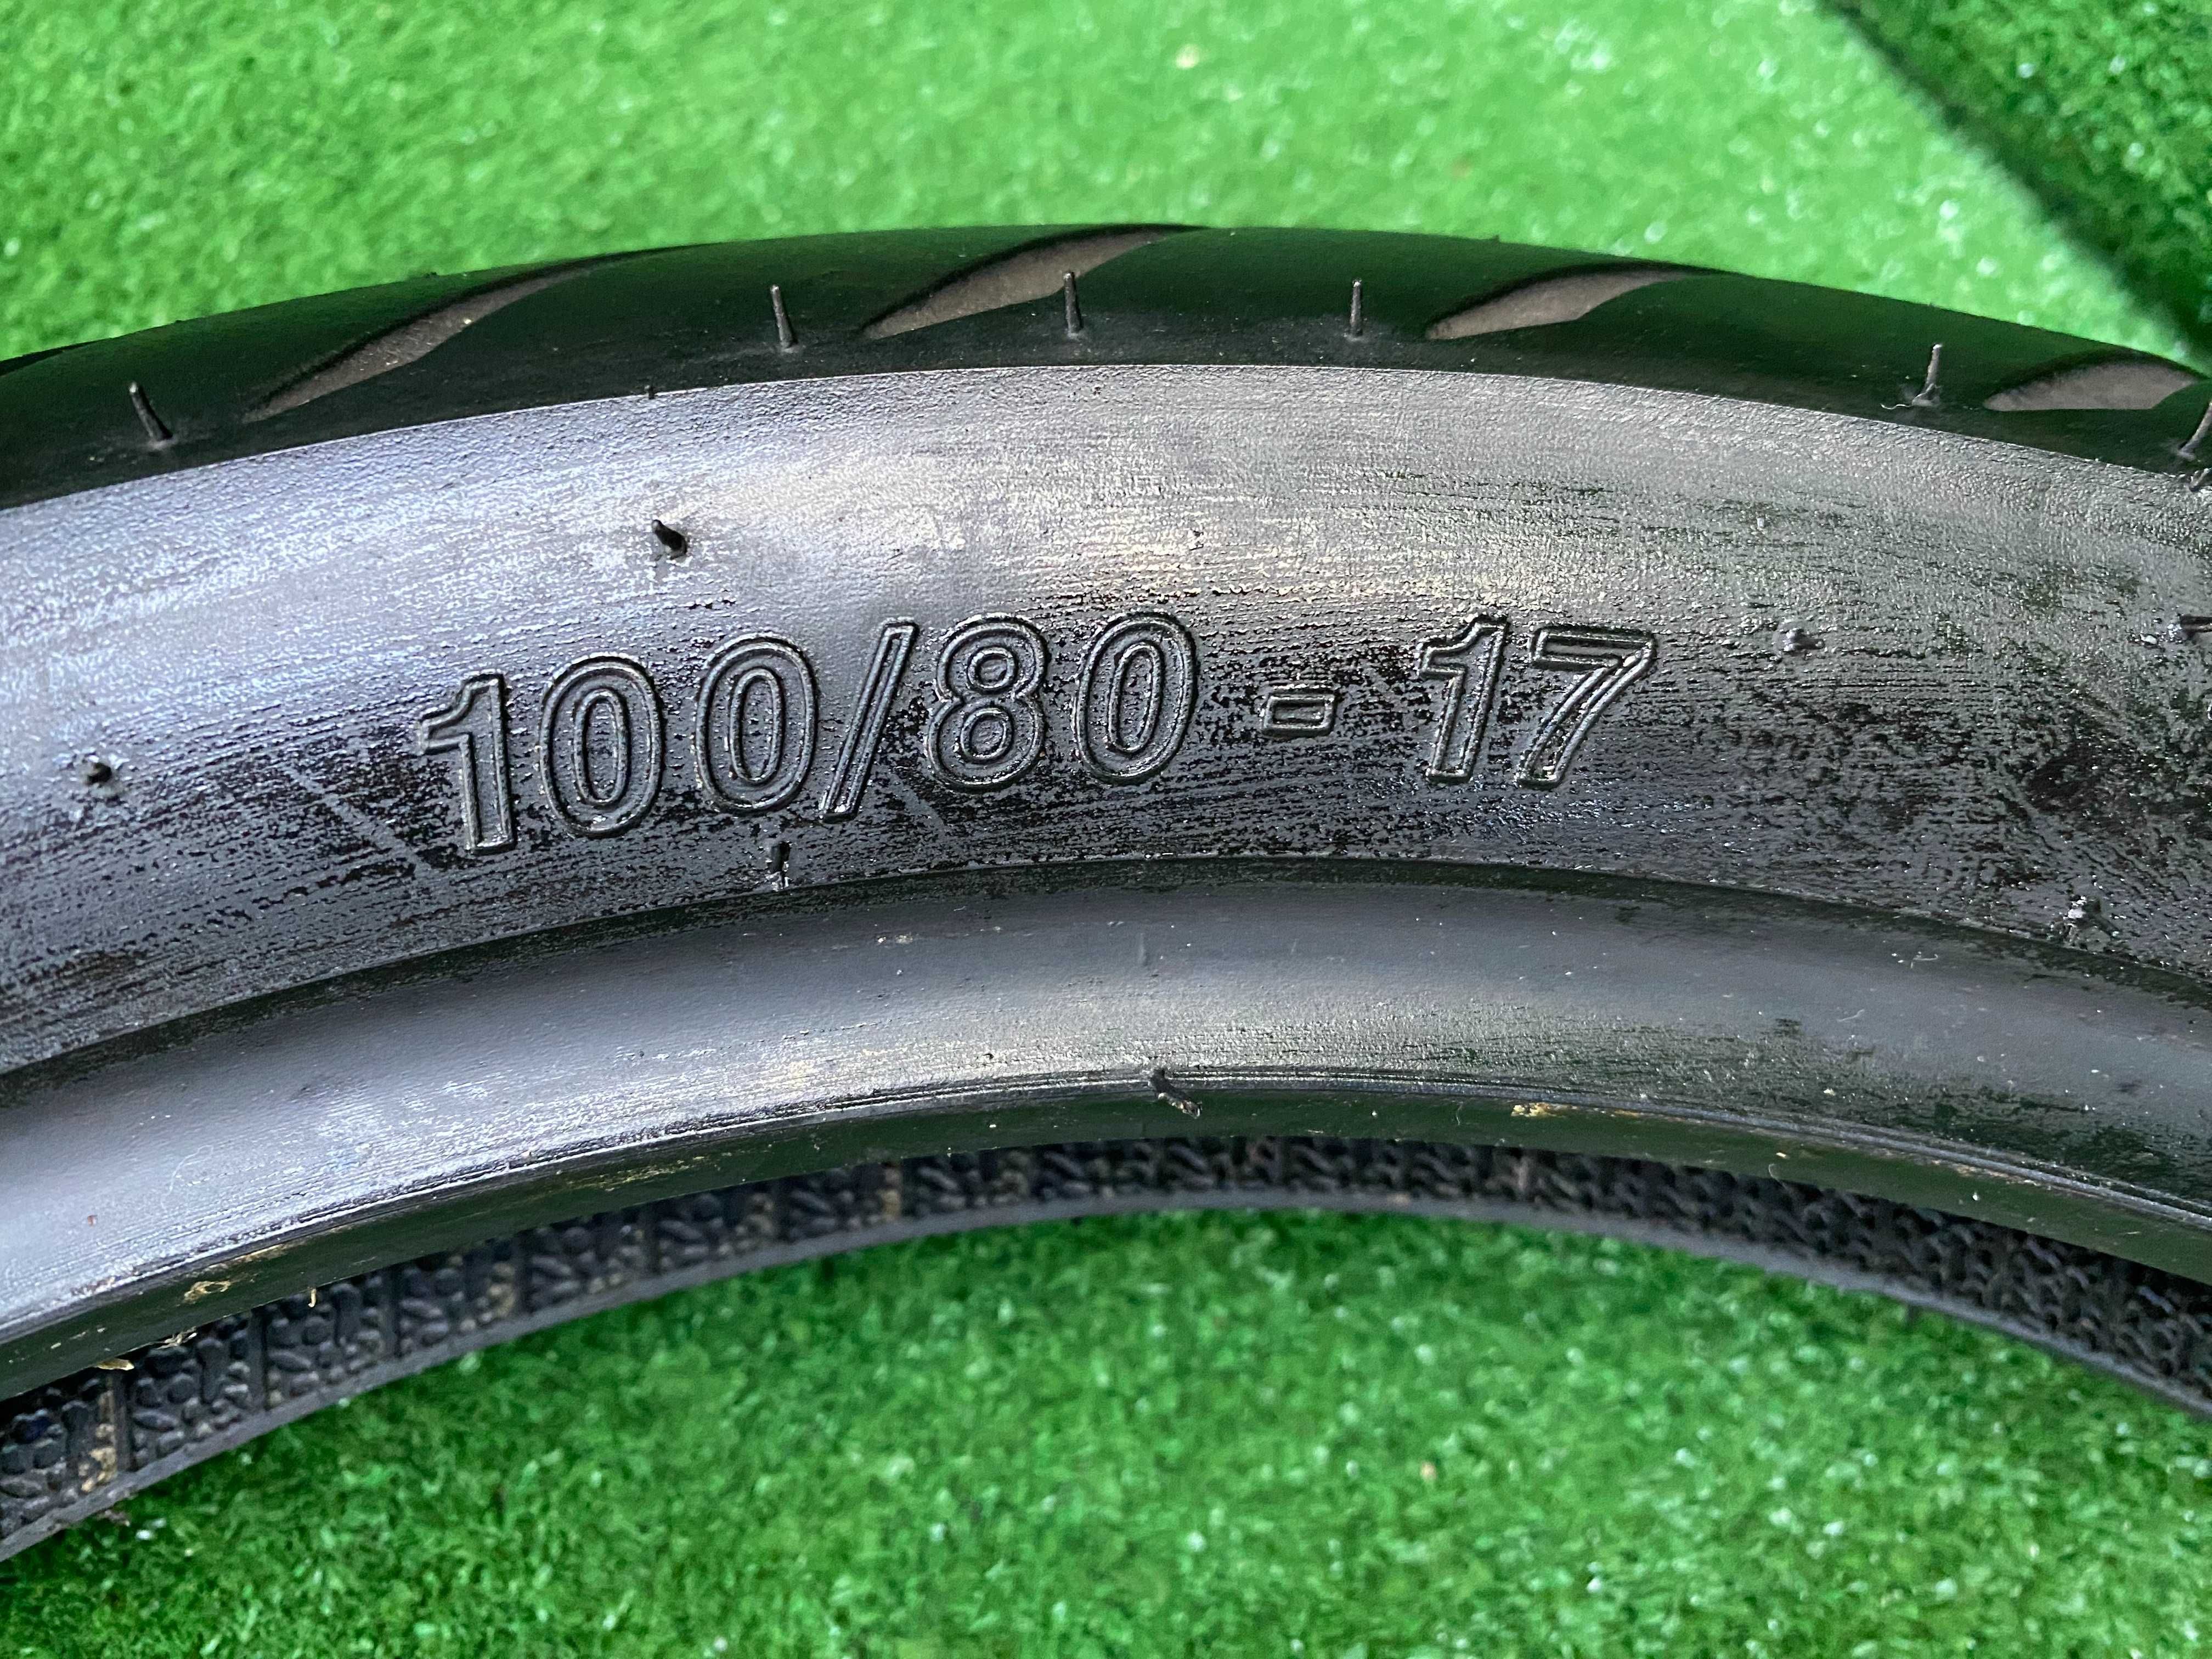 100/80/17 mitas MC25 Bogart pneu usado mota